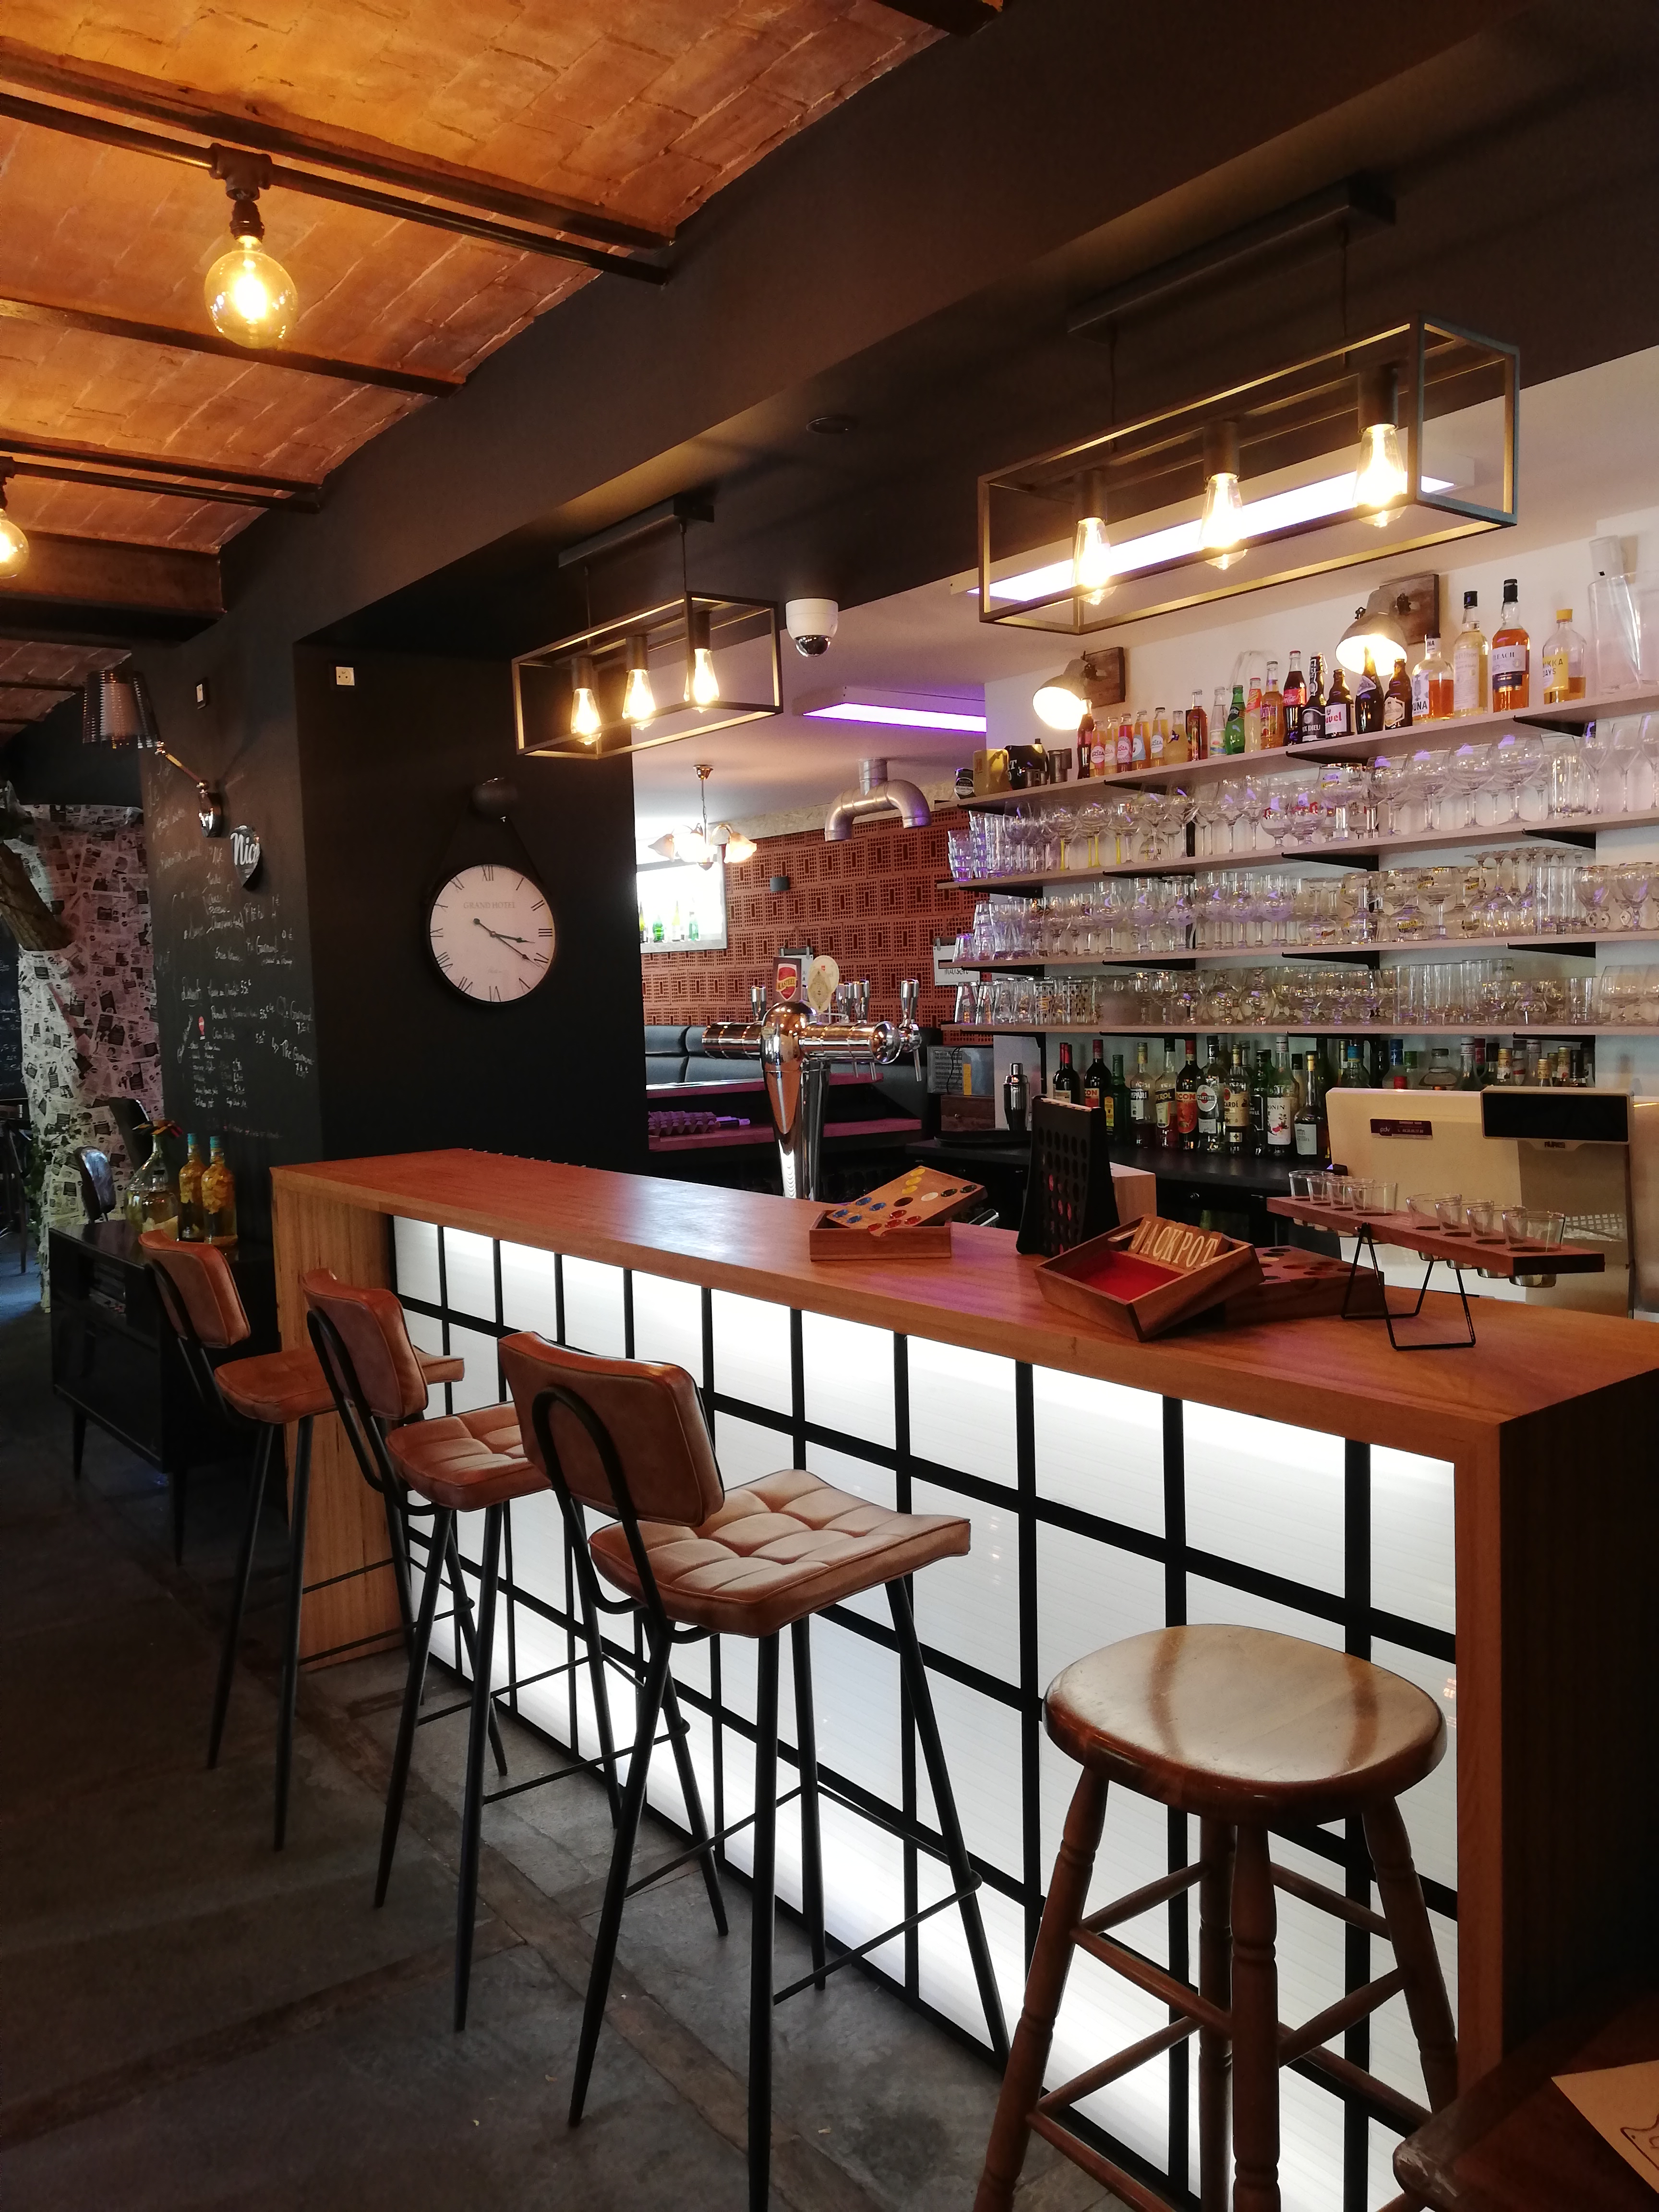 Bar Restaurant Bistrot Ludique, au coeur du village d'Herlies dans les Weppes.
Idéalement situé l'établissement se trouve à quinze minutes de la ville de Lille, capitale des Flandres.
Le Tablier a été créé en 2020 pour offrir un lieu de vie au sein du village et des communes avoisinantes.
->Vente du fonds de commerce 120 000 €
-Aménagements intérieurs
-Tous les éléments de la cuisine et de bar (achetés neufs en 2020)

->Location des murs du local situé en rez-de-chaussée d’une surface d’environ 120 m² comprenant :
-Une salle de restaurant (78 places assises),
-Une cuisine,
-Une réserve,
-2 sanitaires dont 1 PMR,
-Une terrasse extérieur (du 1er avril au 1er octobre),
-Une licence IV

Loyer mensuel - 1 600 euros HT
Provision pour charge mensuelle - 250 euros (taxe foncière et eau)

Pour tous renseignements complémentaires merci de contacter